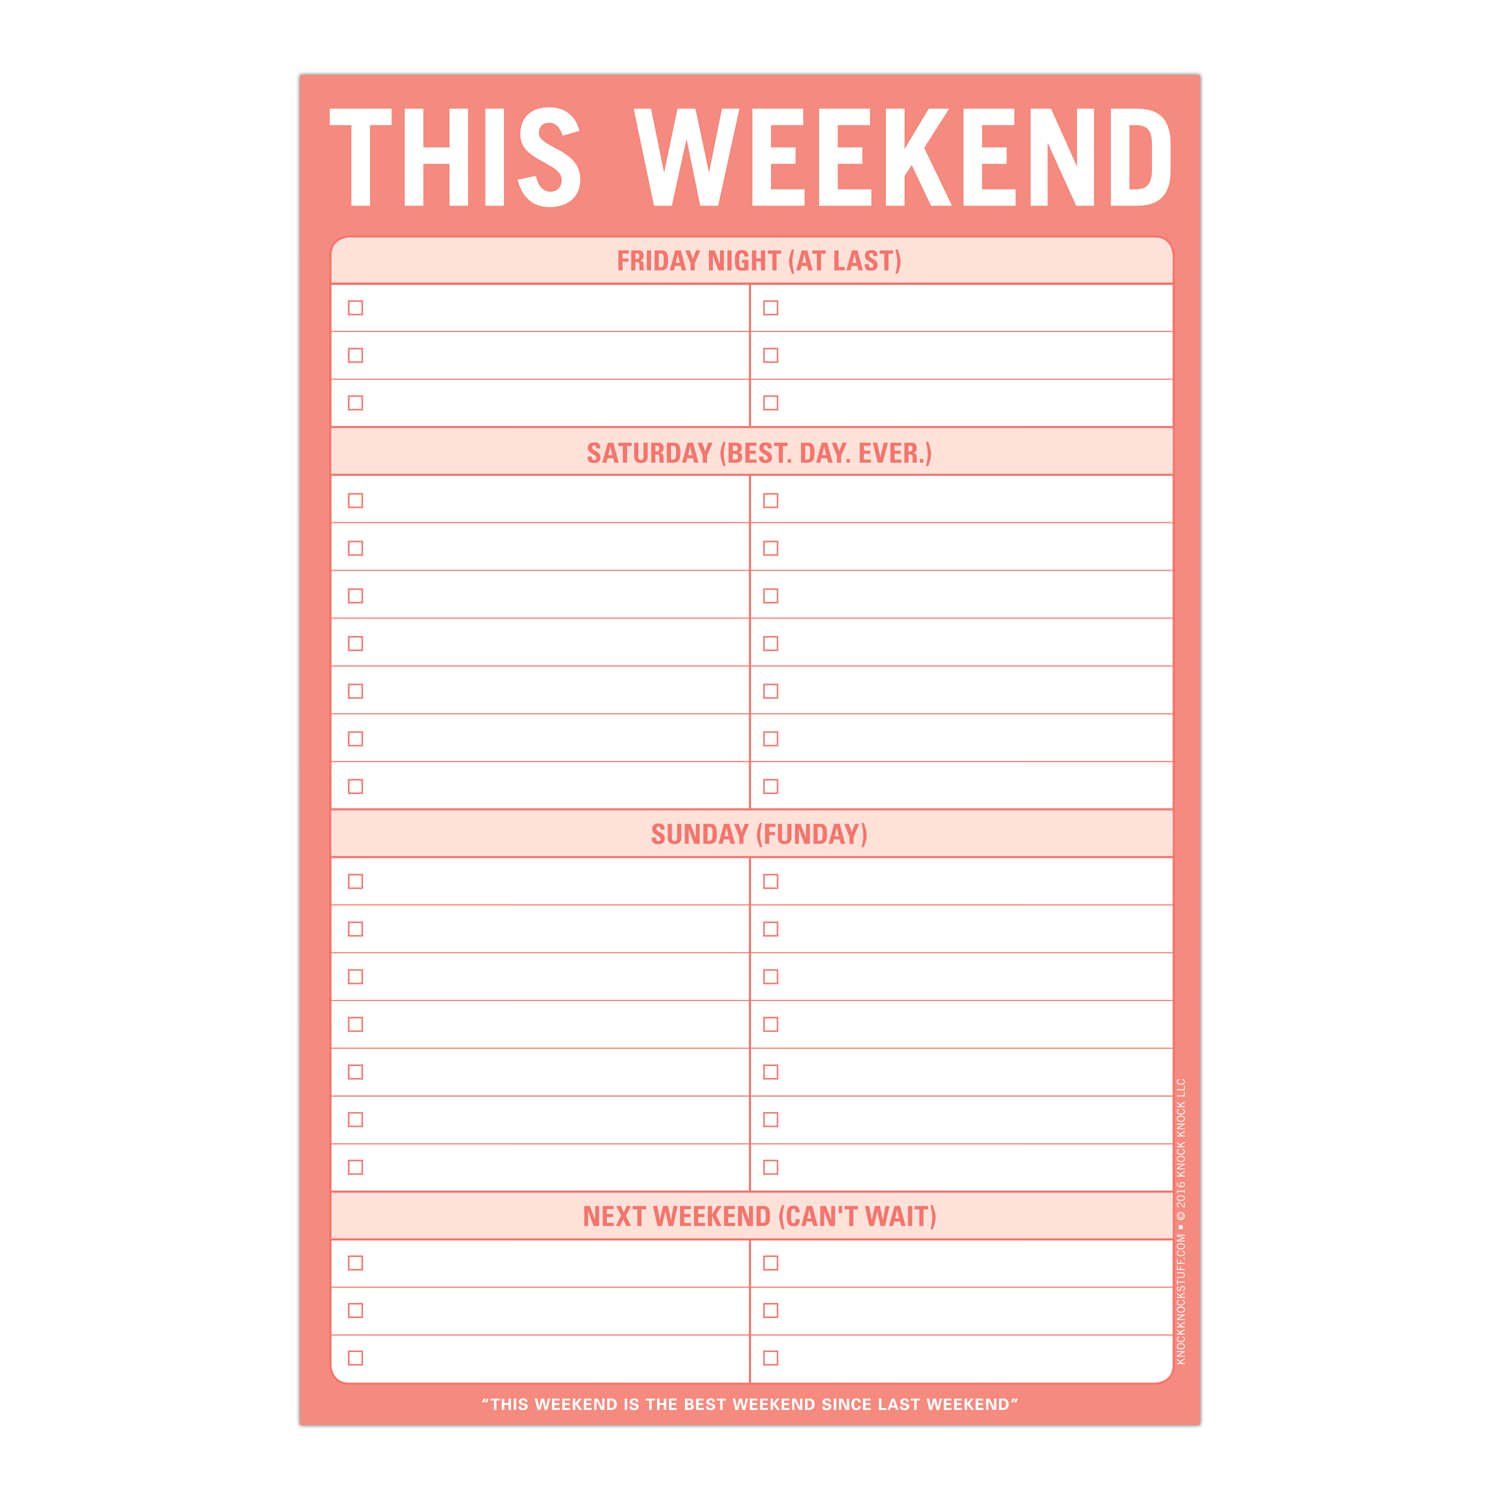 sample of weekend schedule template